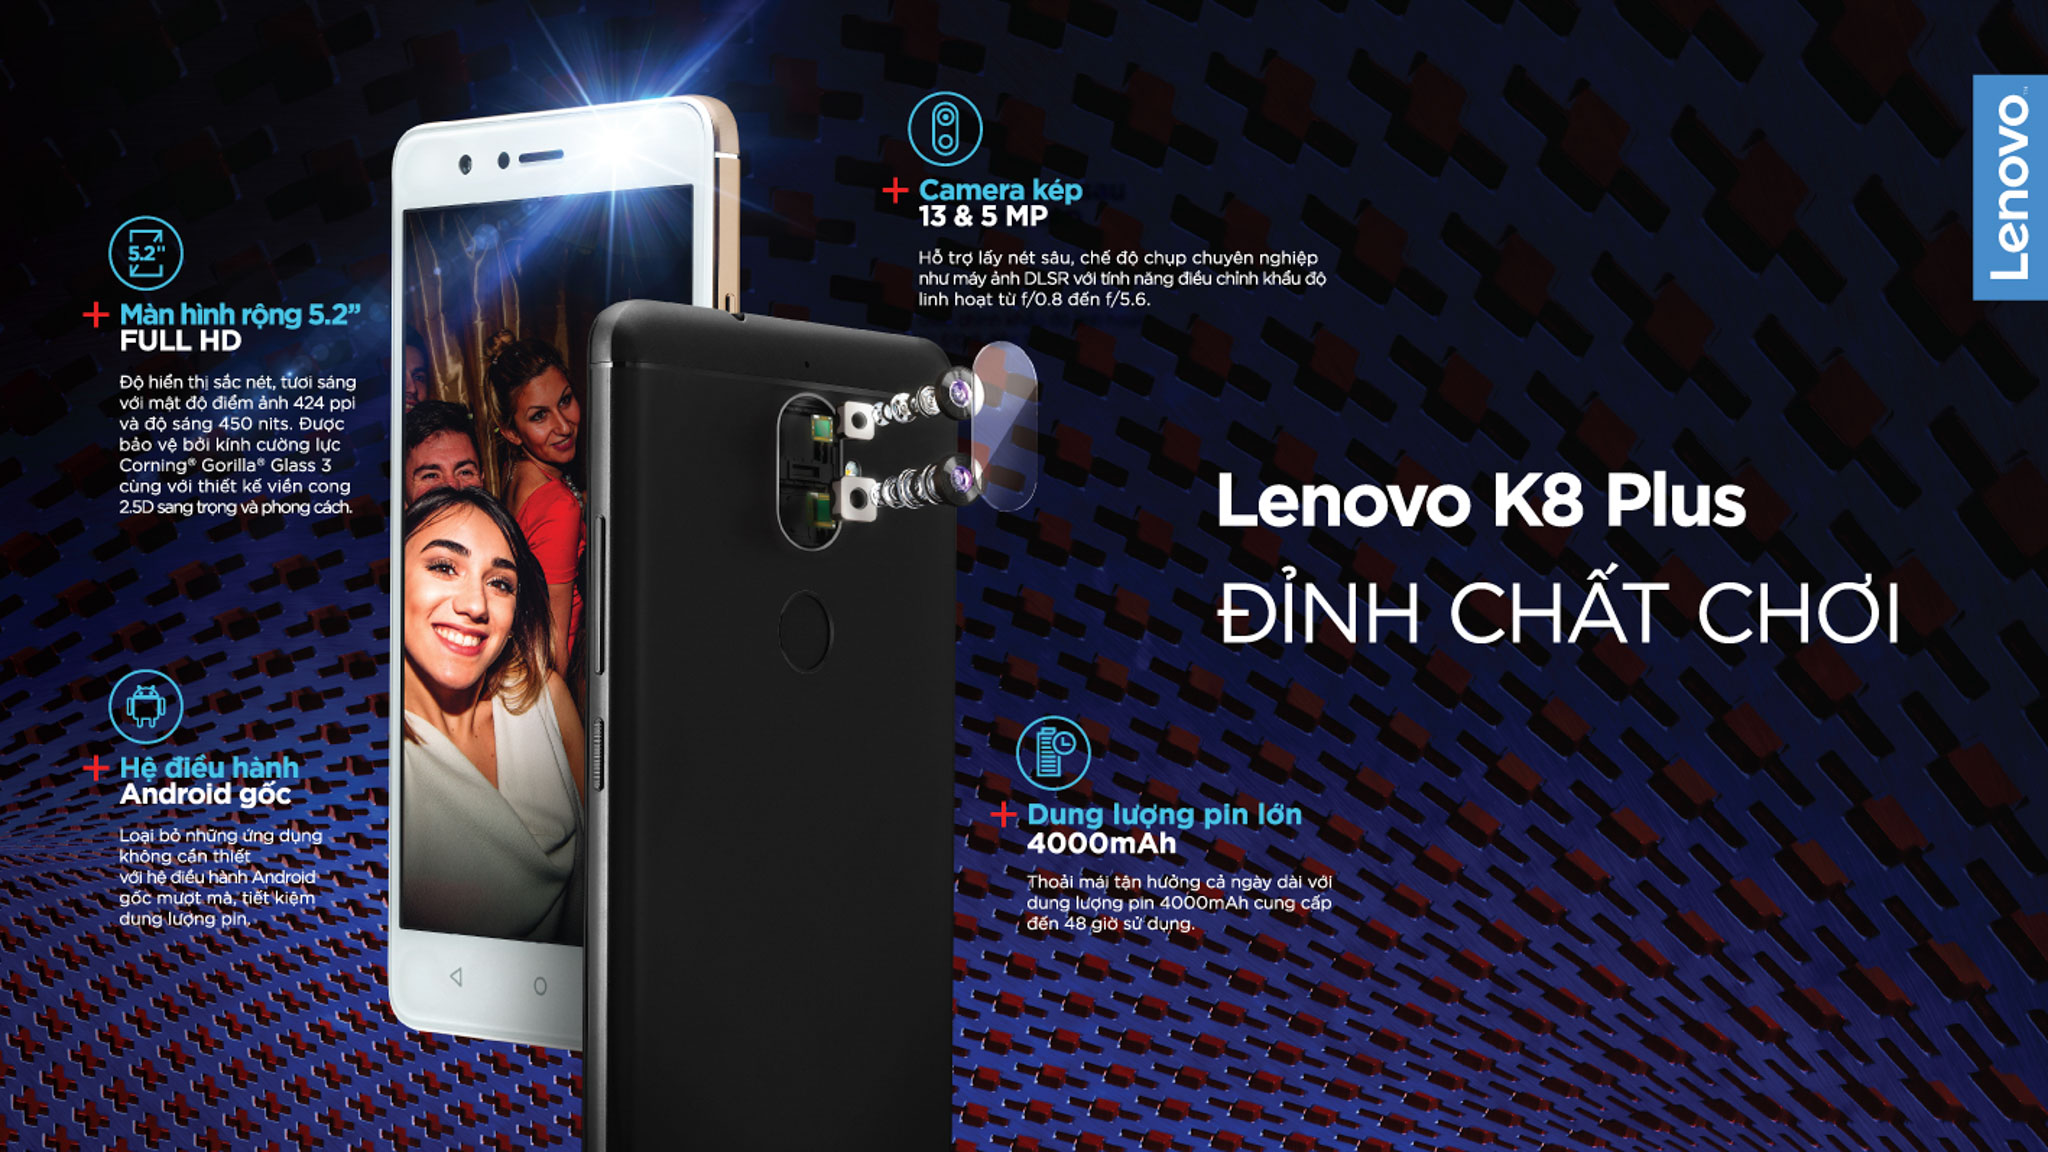 Lenovo chính thức ra mắt Lenovo K8 Plus, camera kép, pin 4000mAh, giá 5.490.000